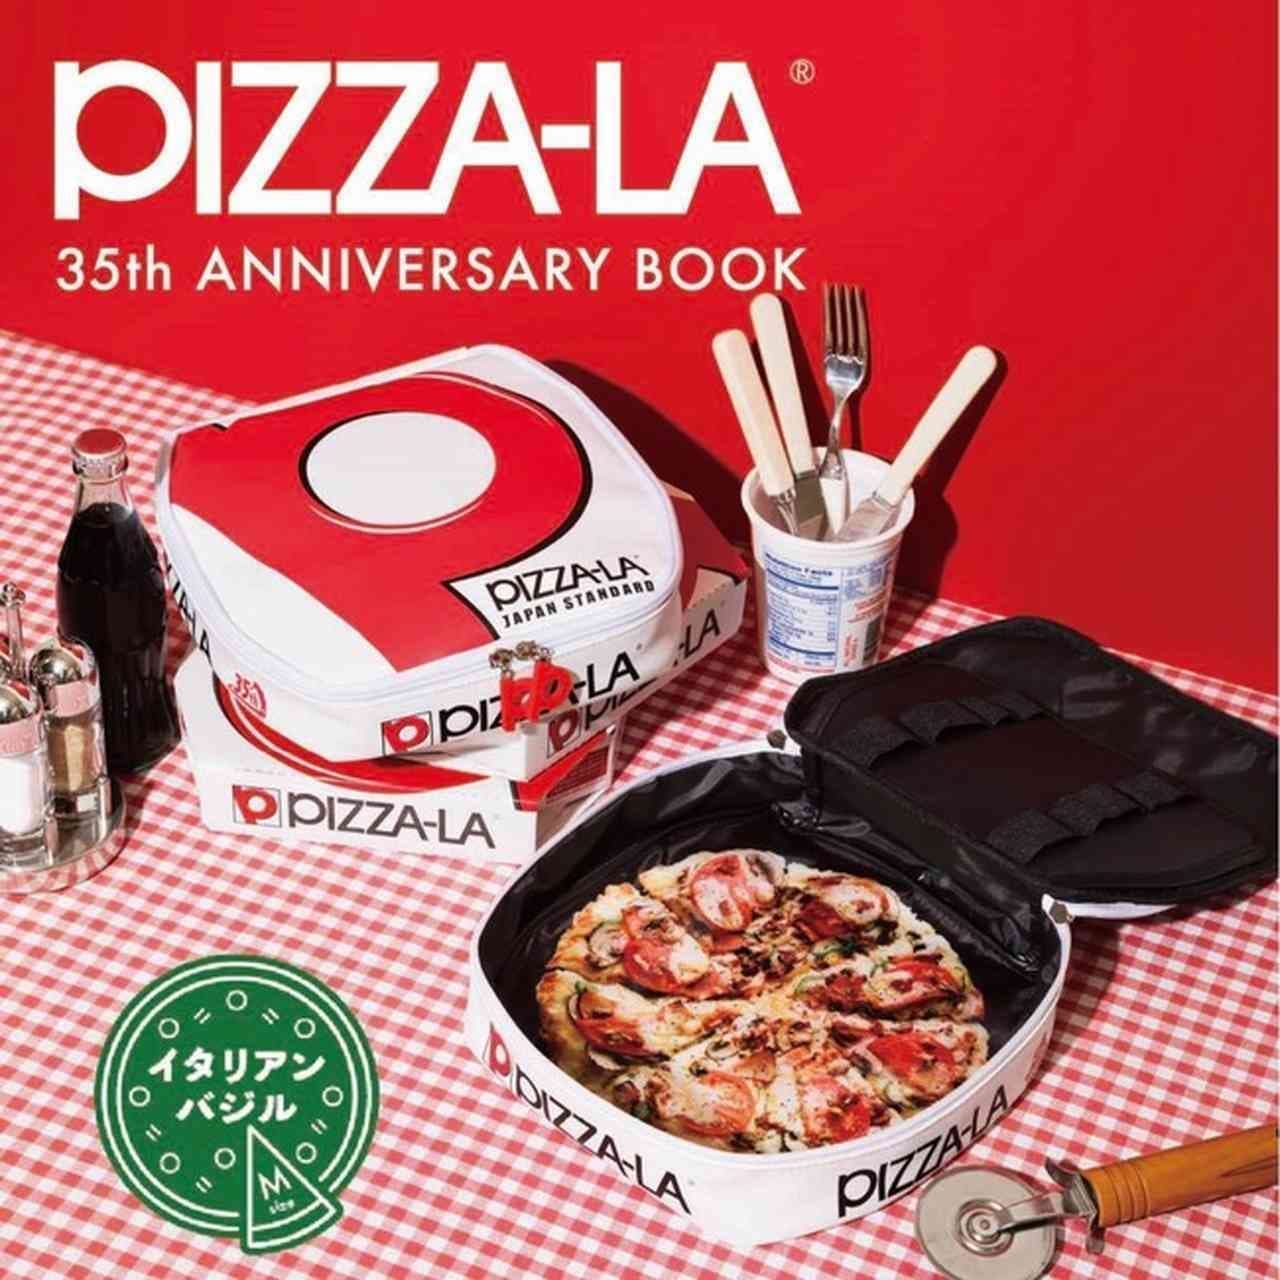 ピザーラ初のブランドブック「PIZZA-LA 35th ANNIVERSARY BOOK」